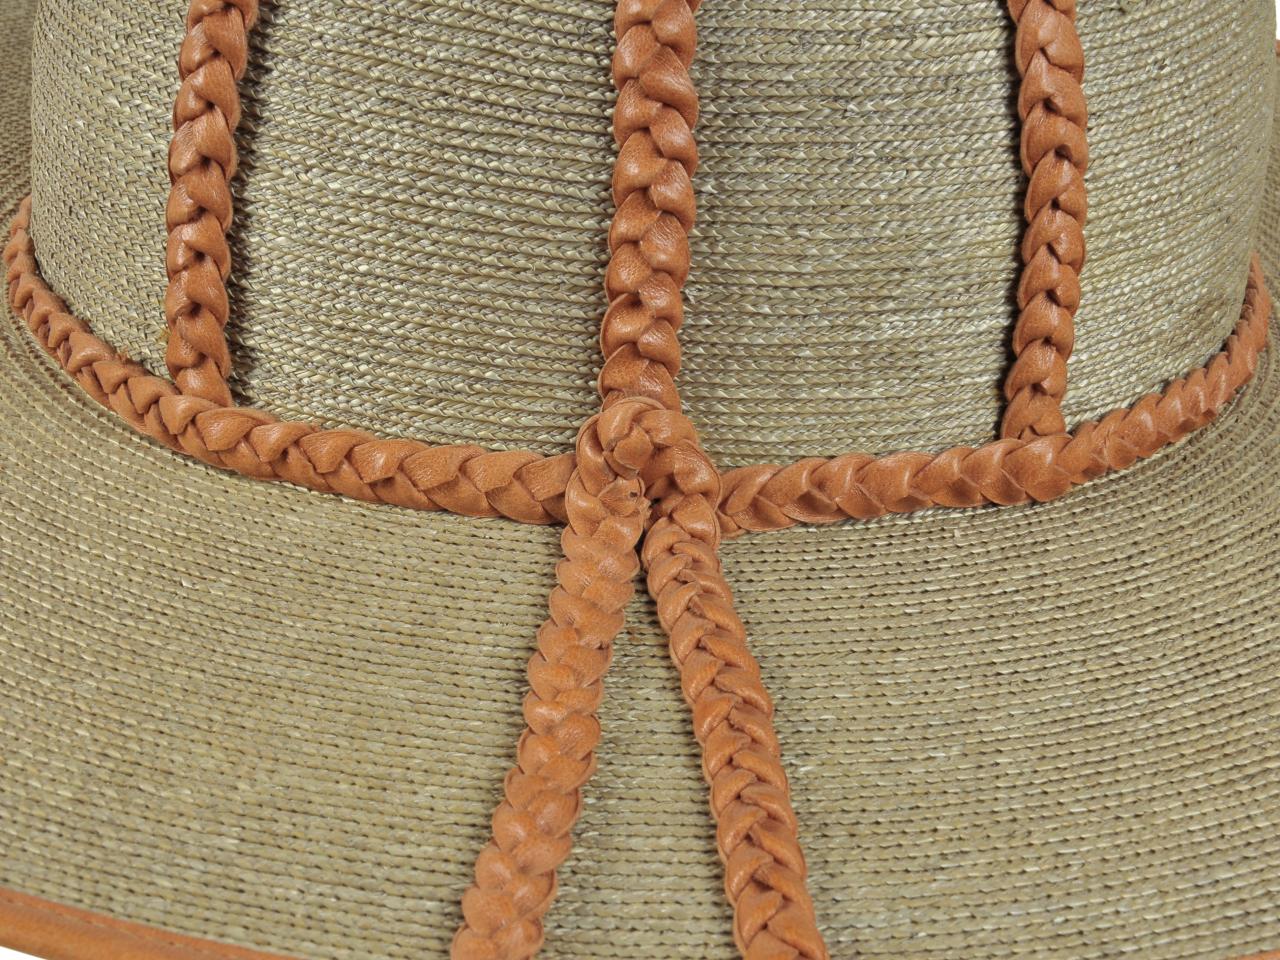 Detalle de bonete, sombrero de hombre en paja teatina trenzada y teñida con tintes naturales, con adornos de cuero trenzado